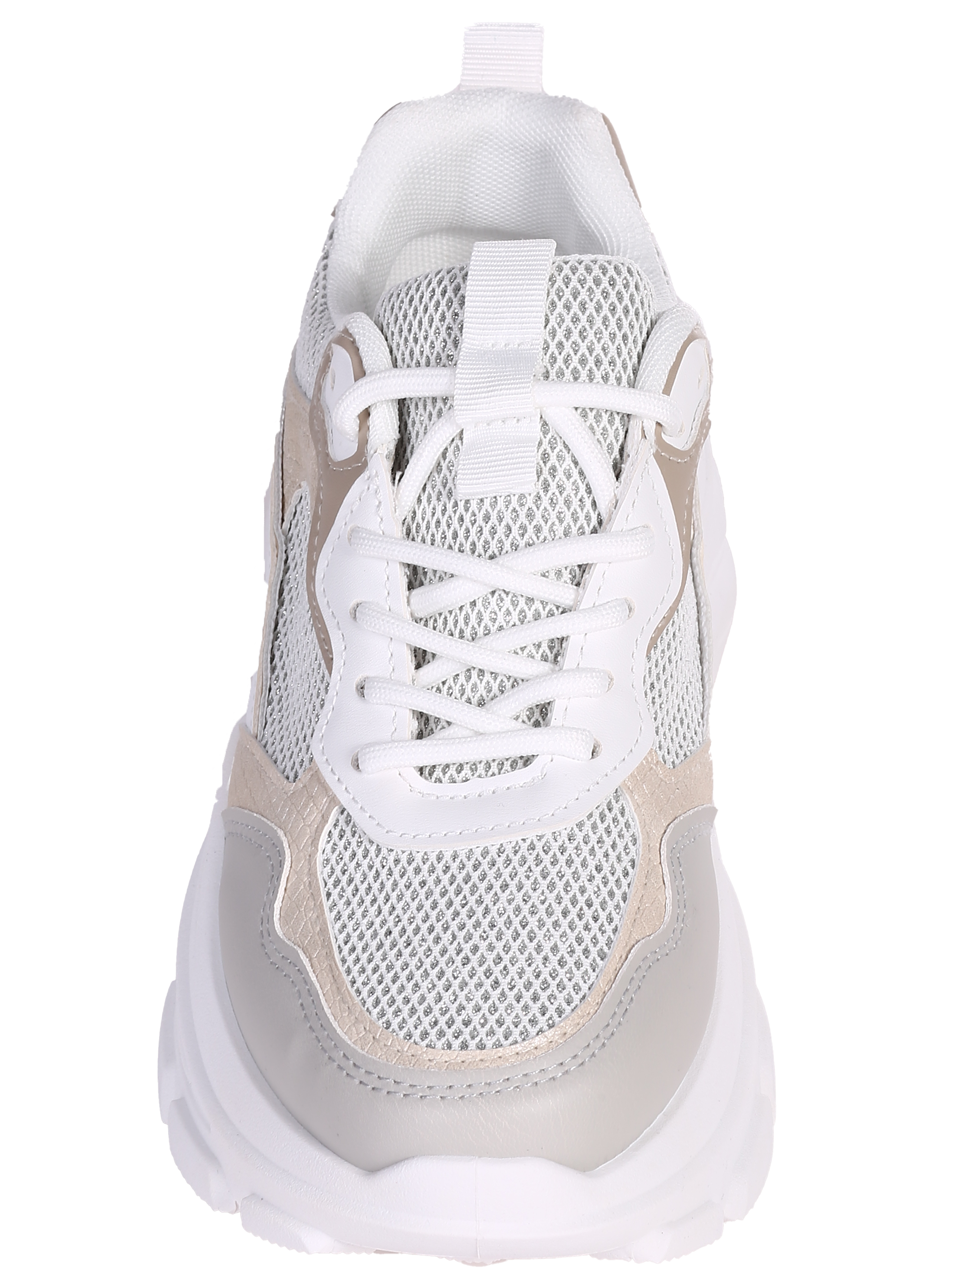 Ежедневни дамски обувки на платформа в бежов/сребрист цвят 3U-24074 beige